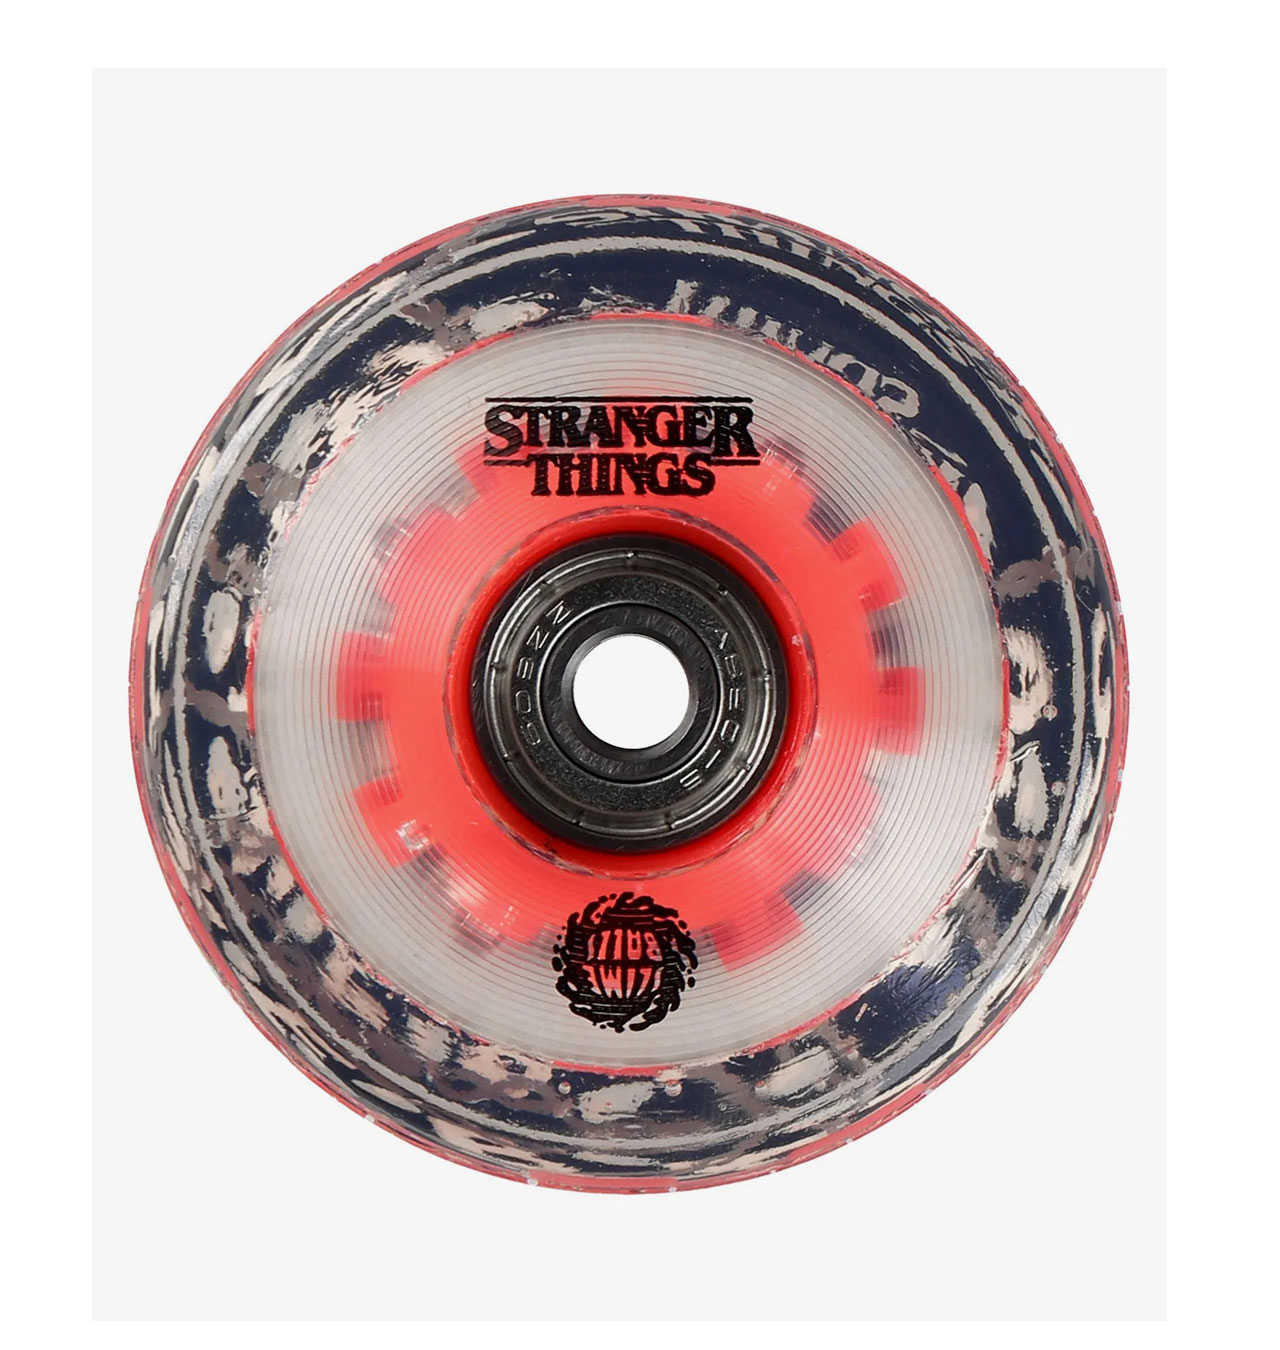 Santa Cruz - Stranger Things Light Ups OG Slime Balls Skateboard Wheels 78A (red